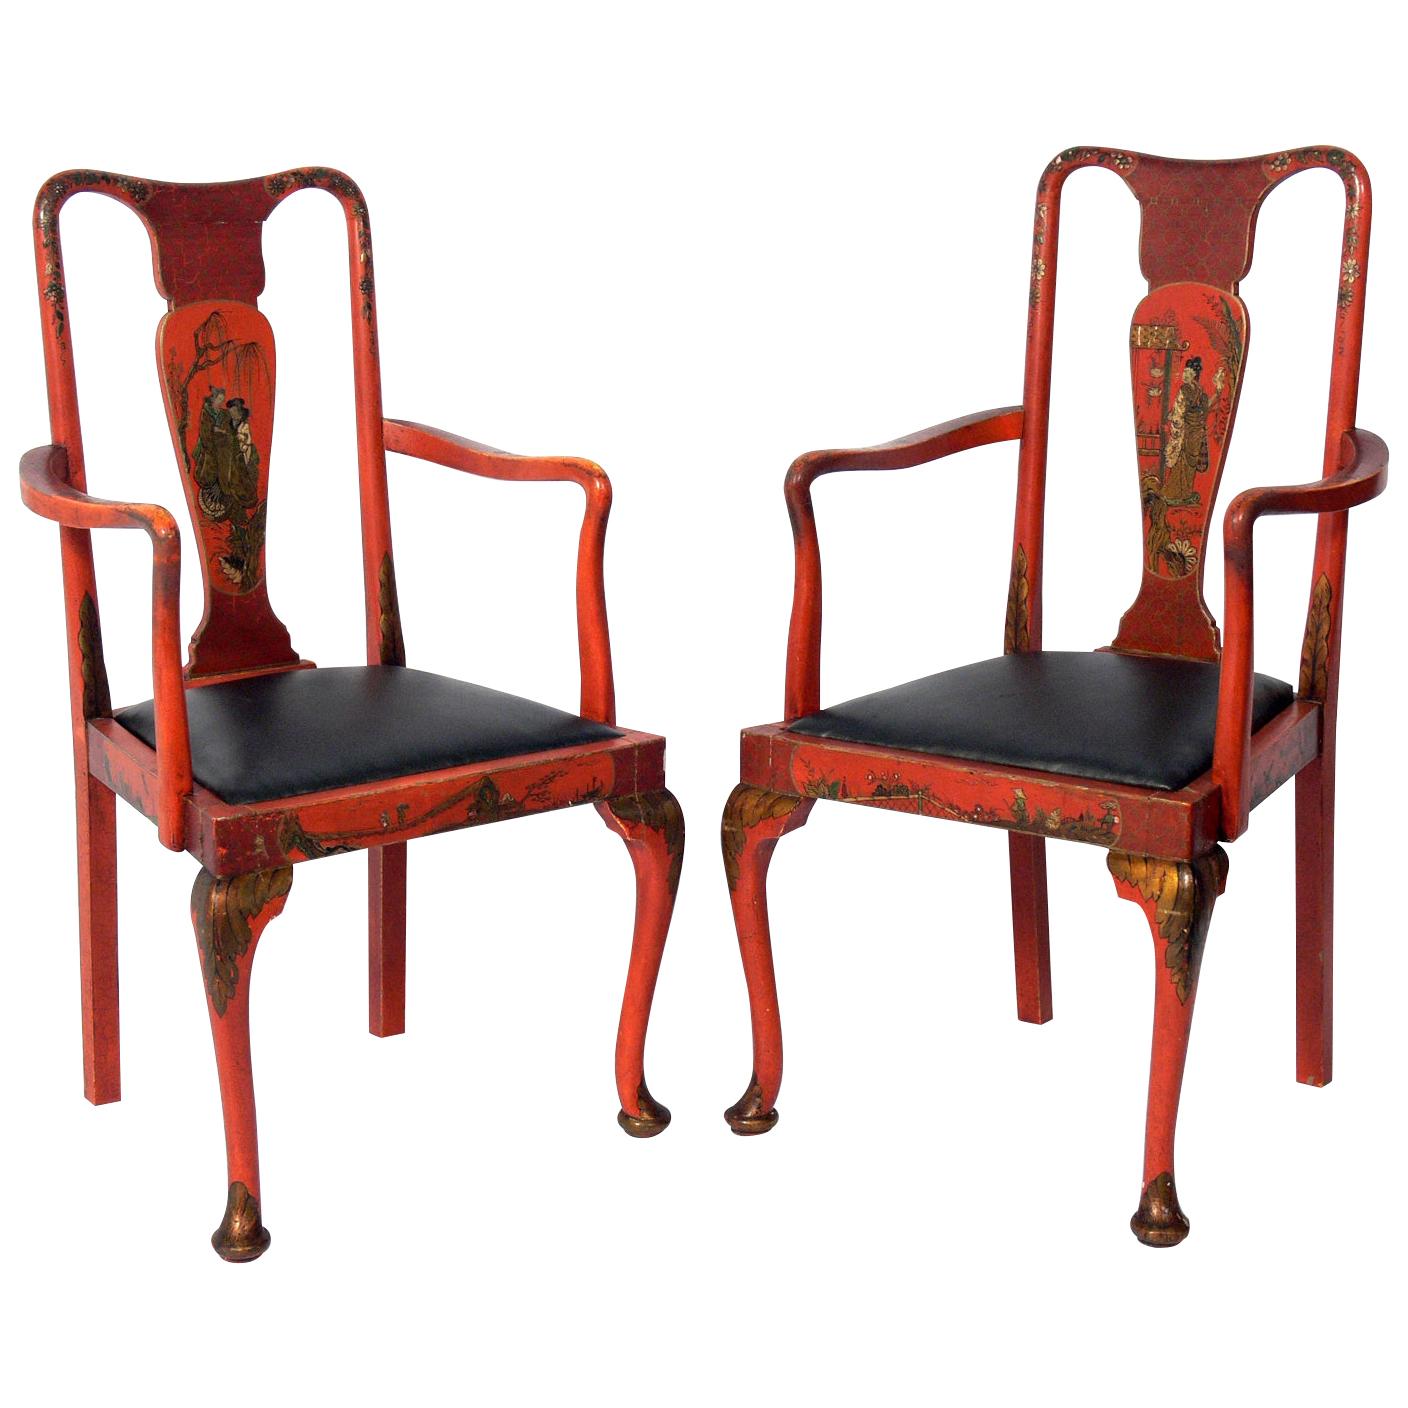 Paire de chaises anciennes de style chinoiseries